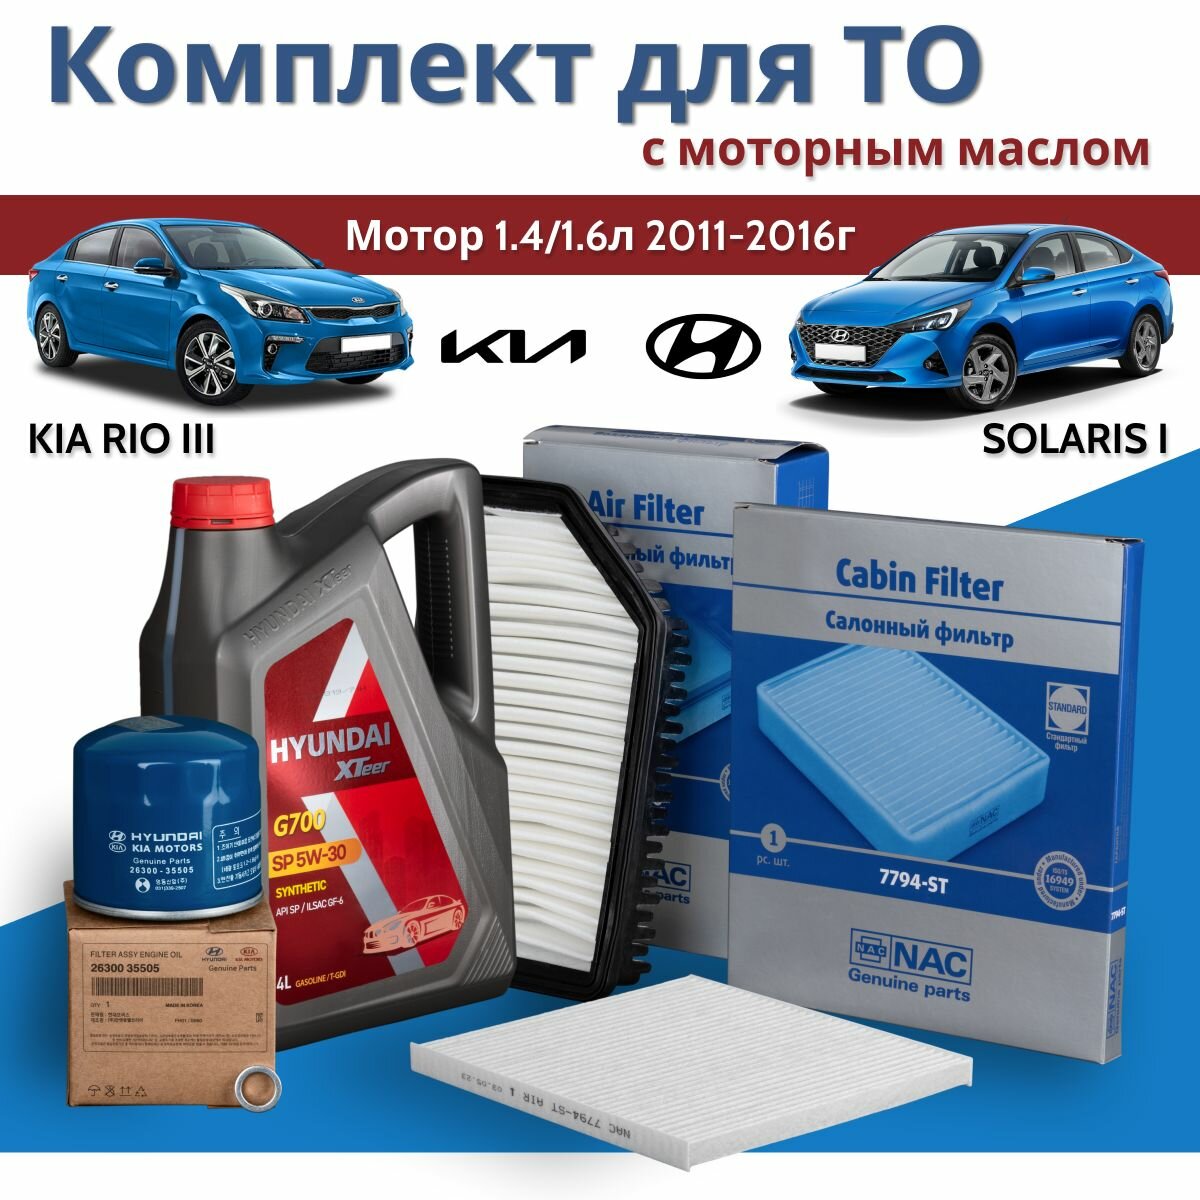 Комплект фильтров для Hyundai Solaris I (Хендай Солярис 1)/ Kia Rio III (Киа Рио 3) с двигателями 1.4 и 1.6 2011-2016 г. в. с моторным маслом 5W-30 Hyundai XTeer G700 4 л